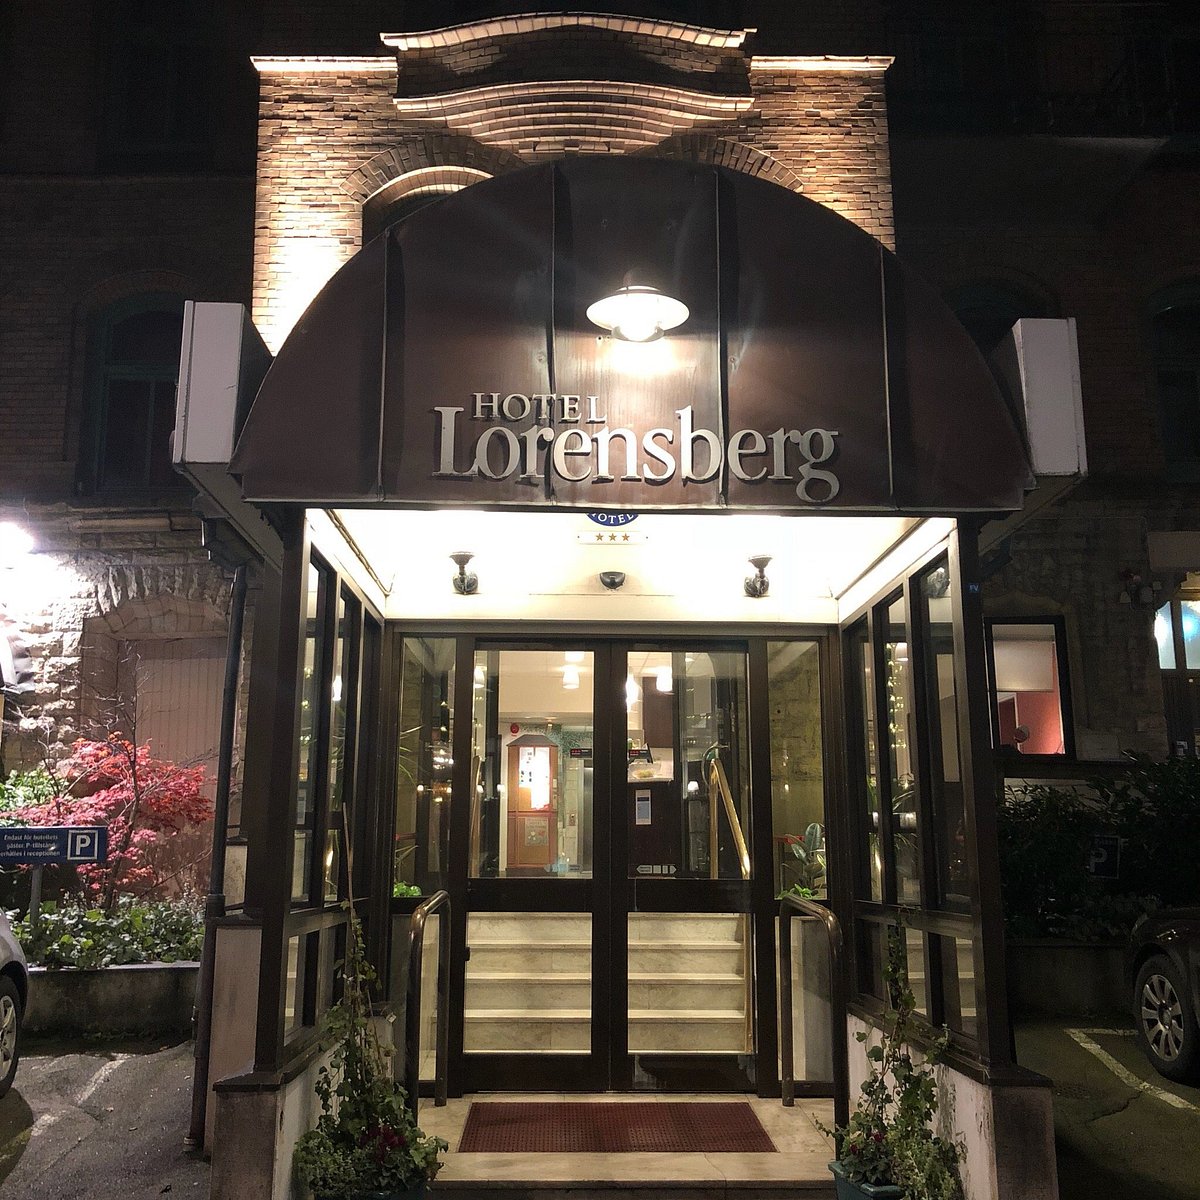 Hotel Lorensberg, ett hotell i Göteborg